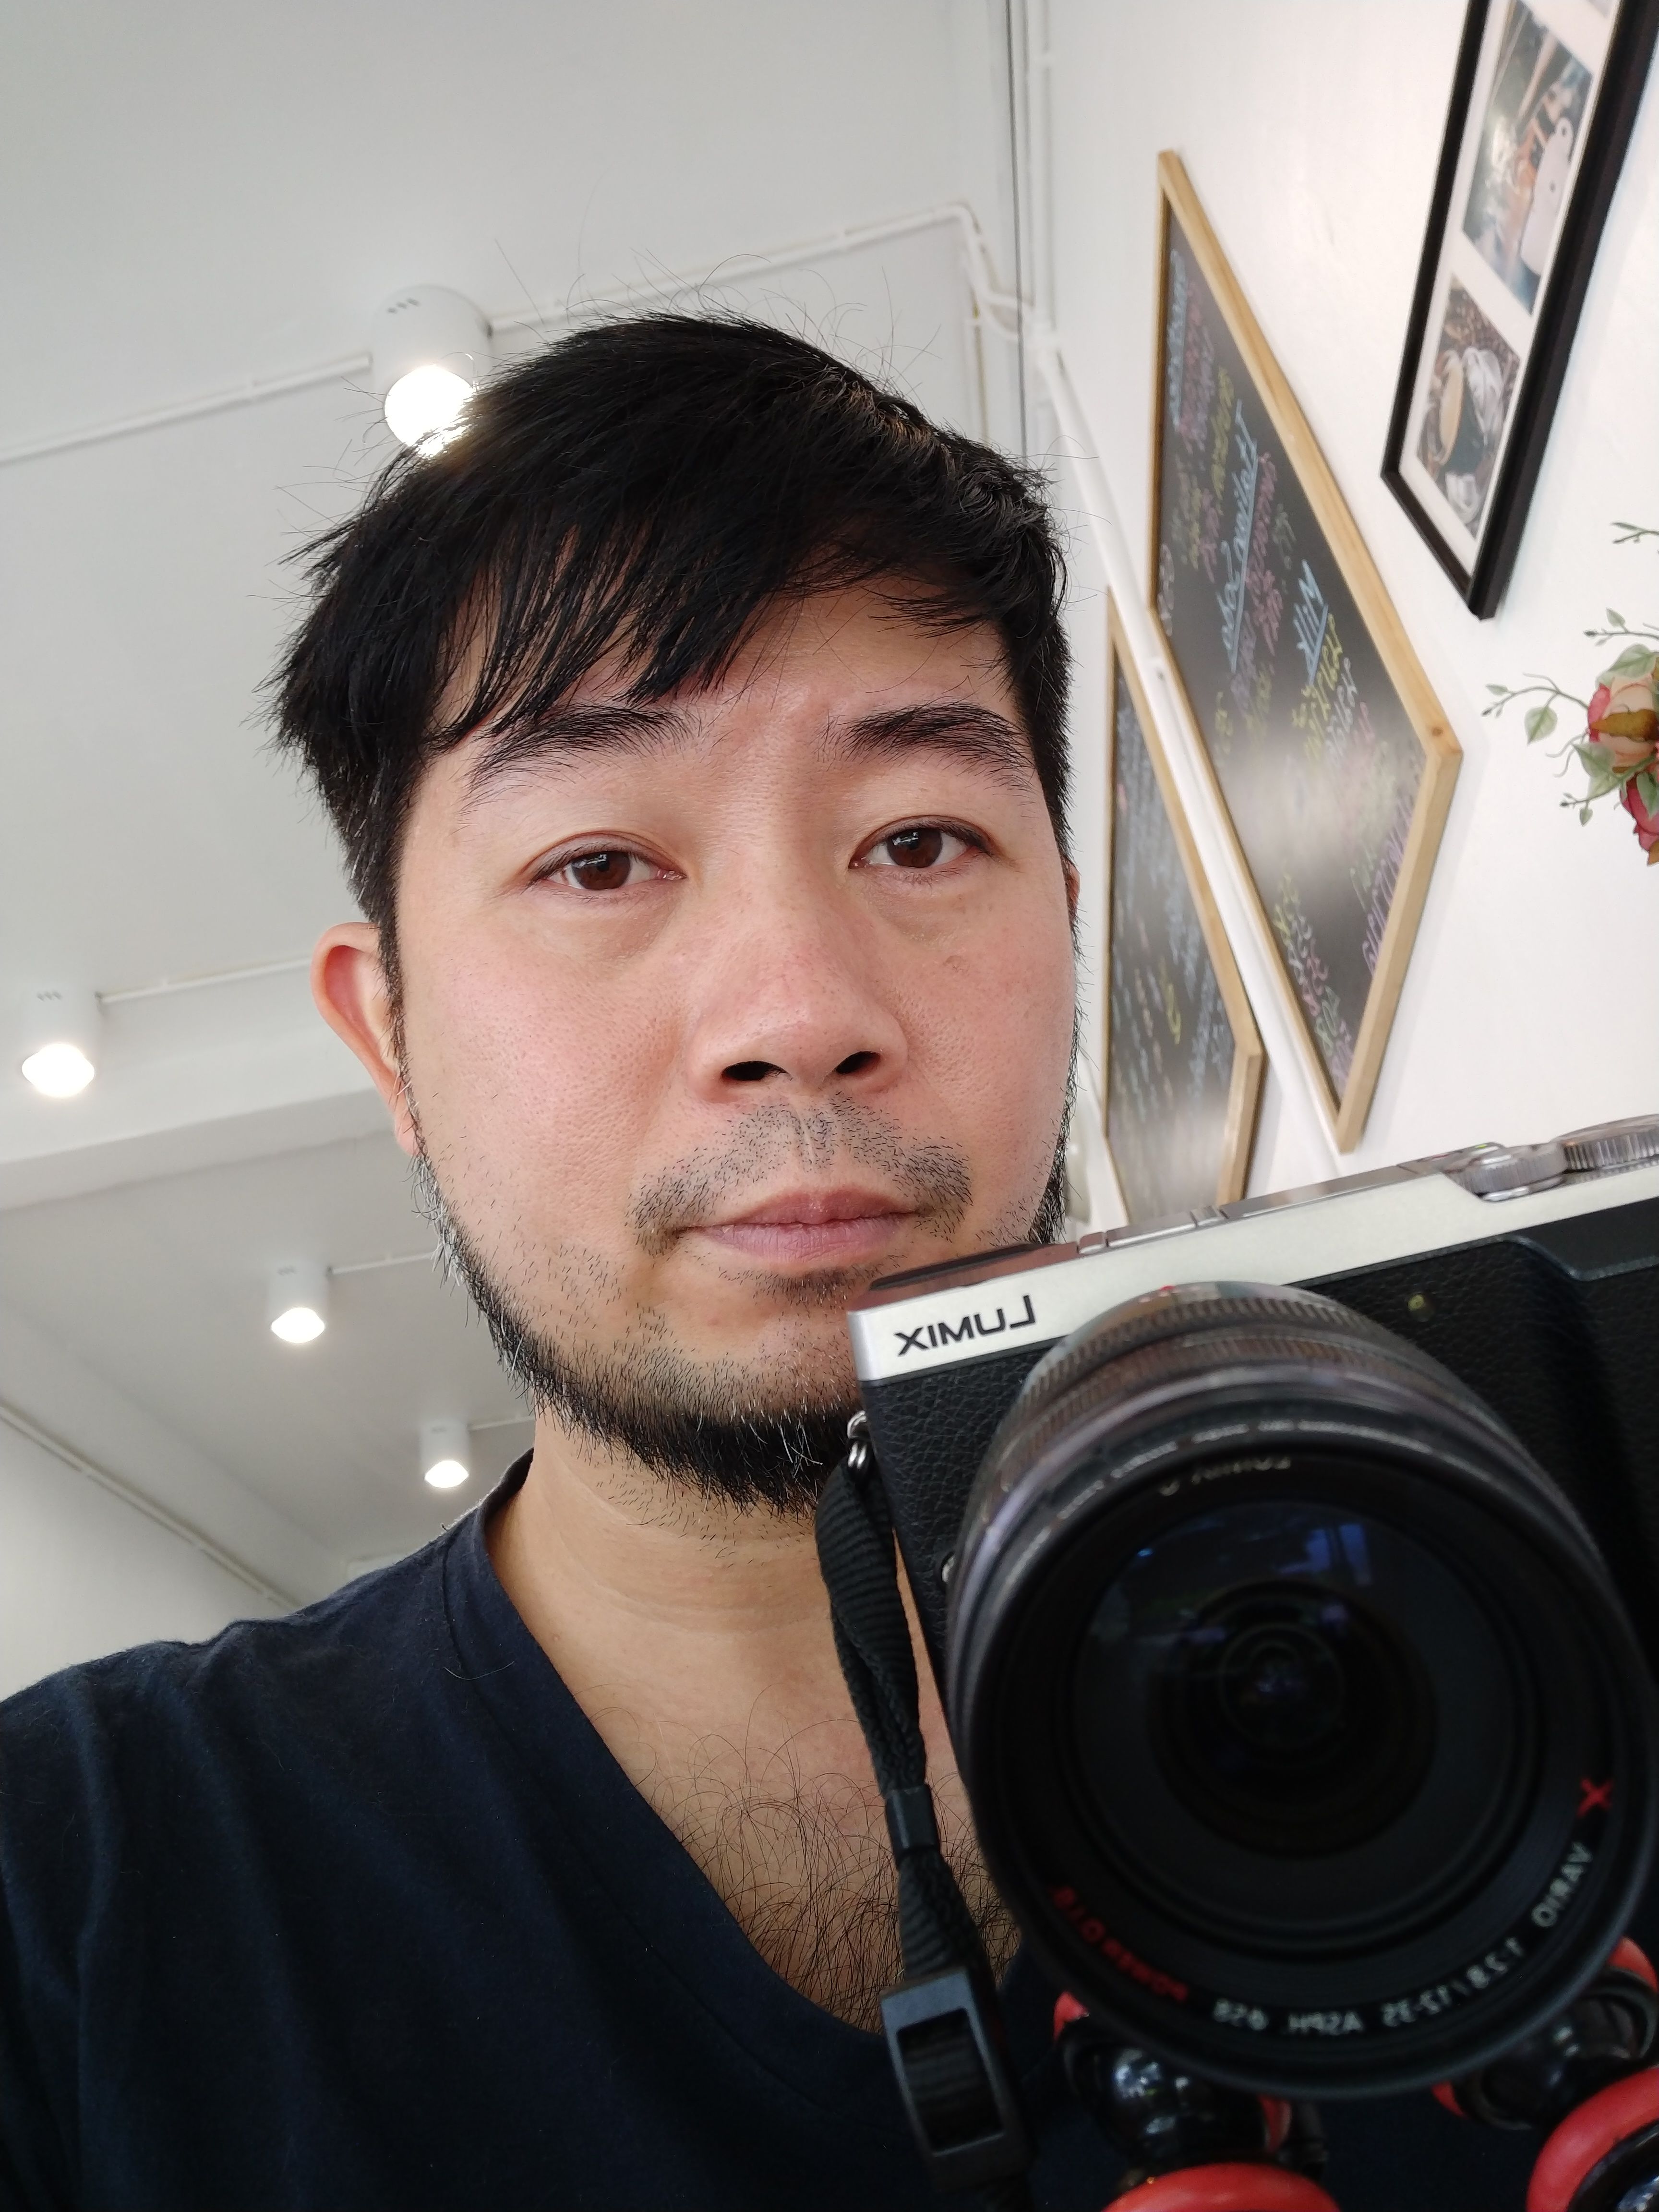 [Preview] พรีวิว OnePlus 5T แกะกล่องเรือธงรุ่นปลายปี งานนี้มีปลี่ยนจอและอัพเกรดกล้อง